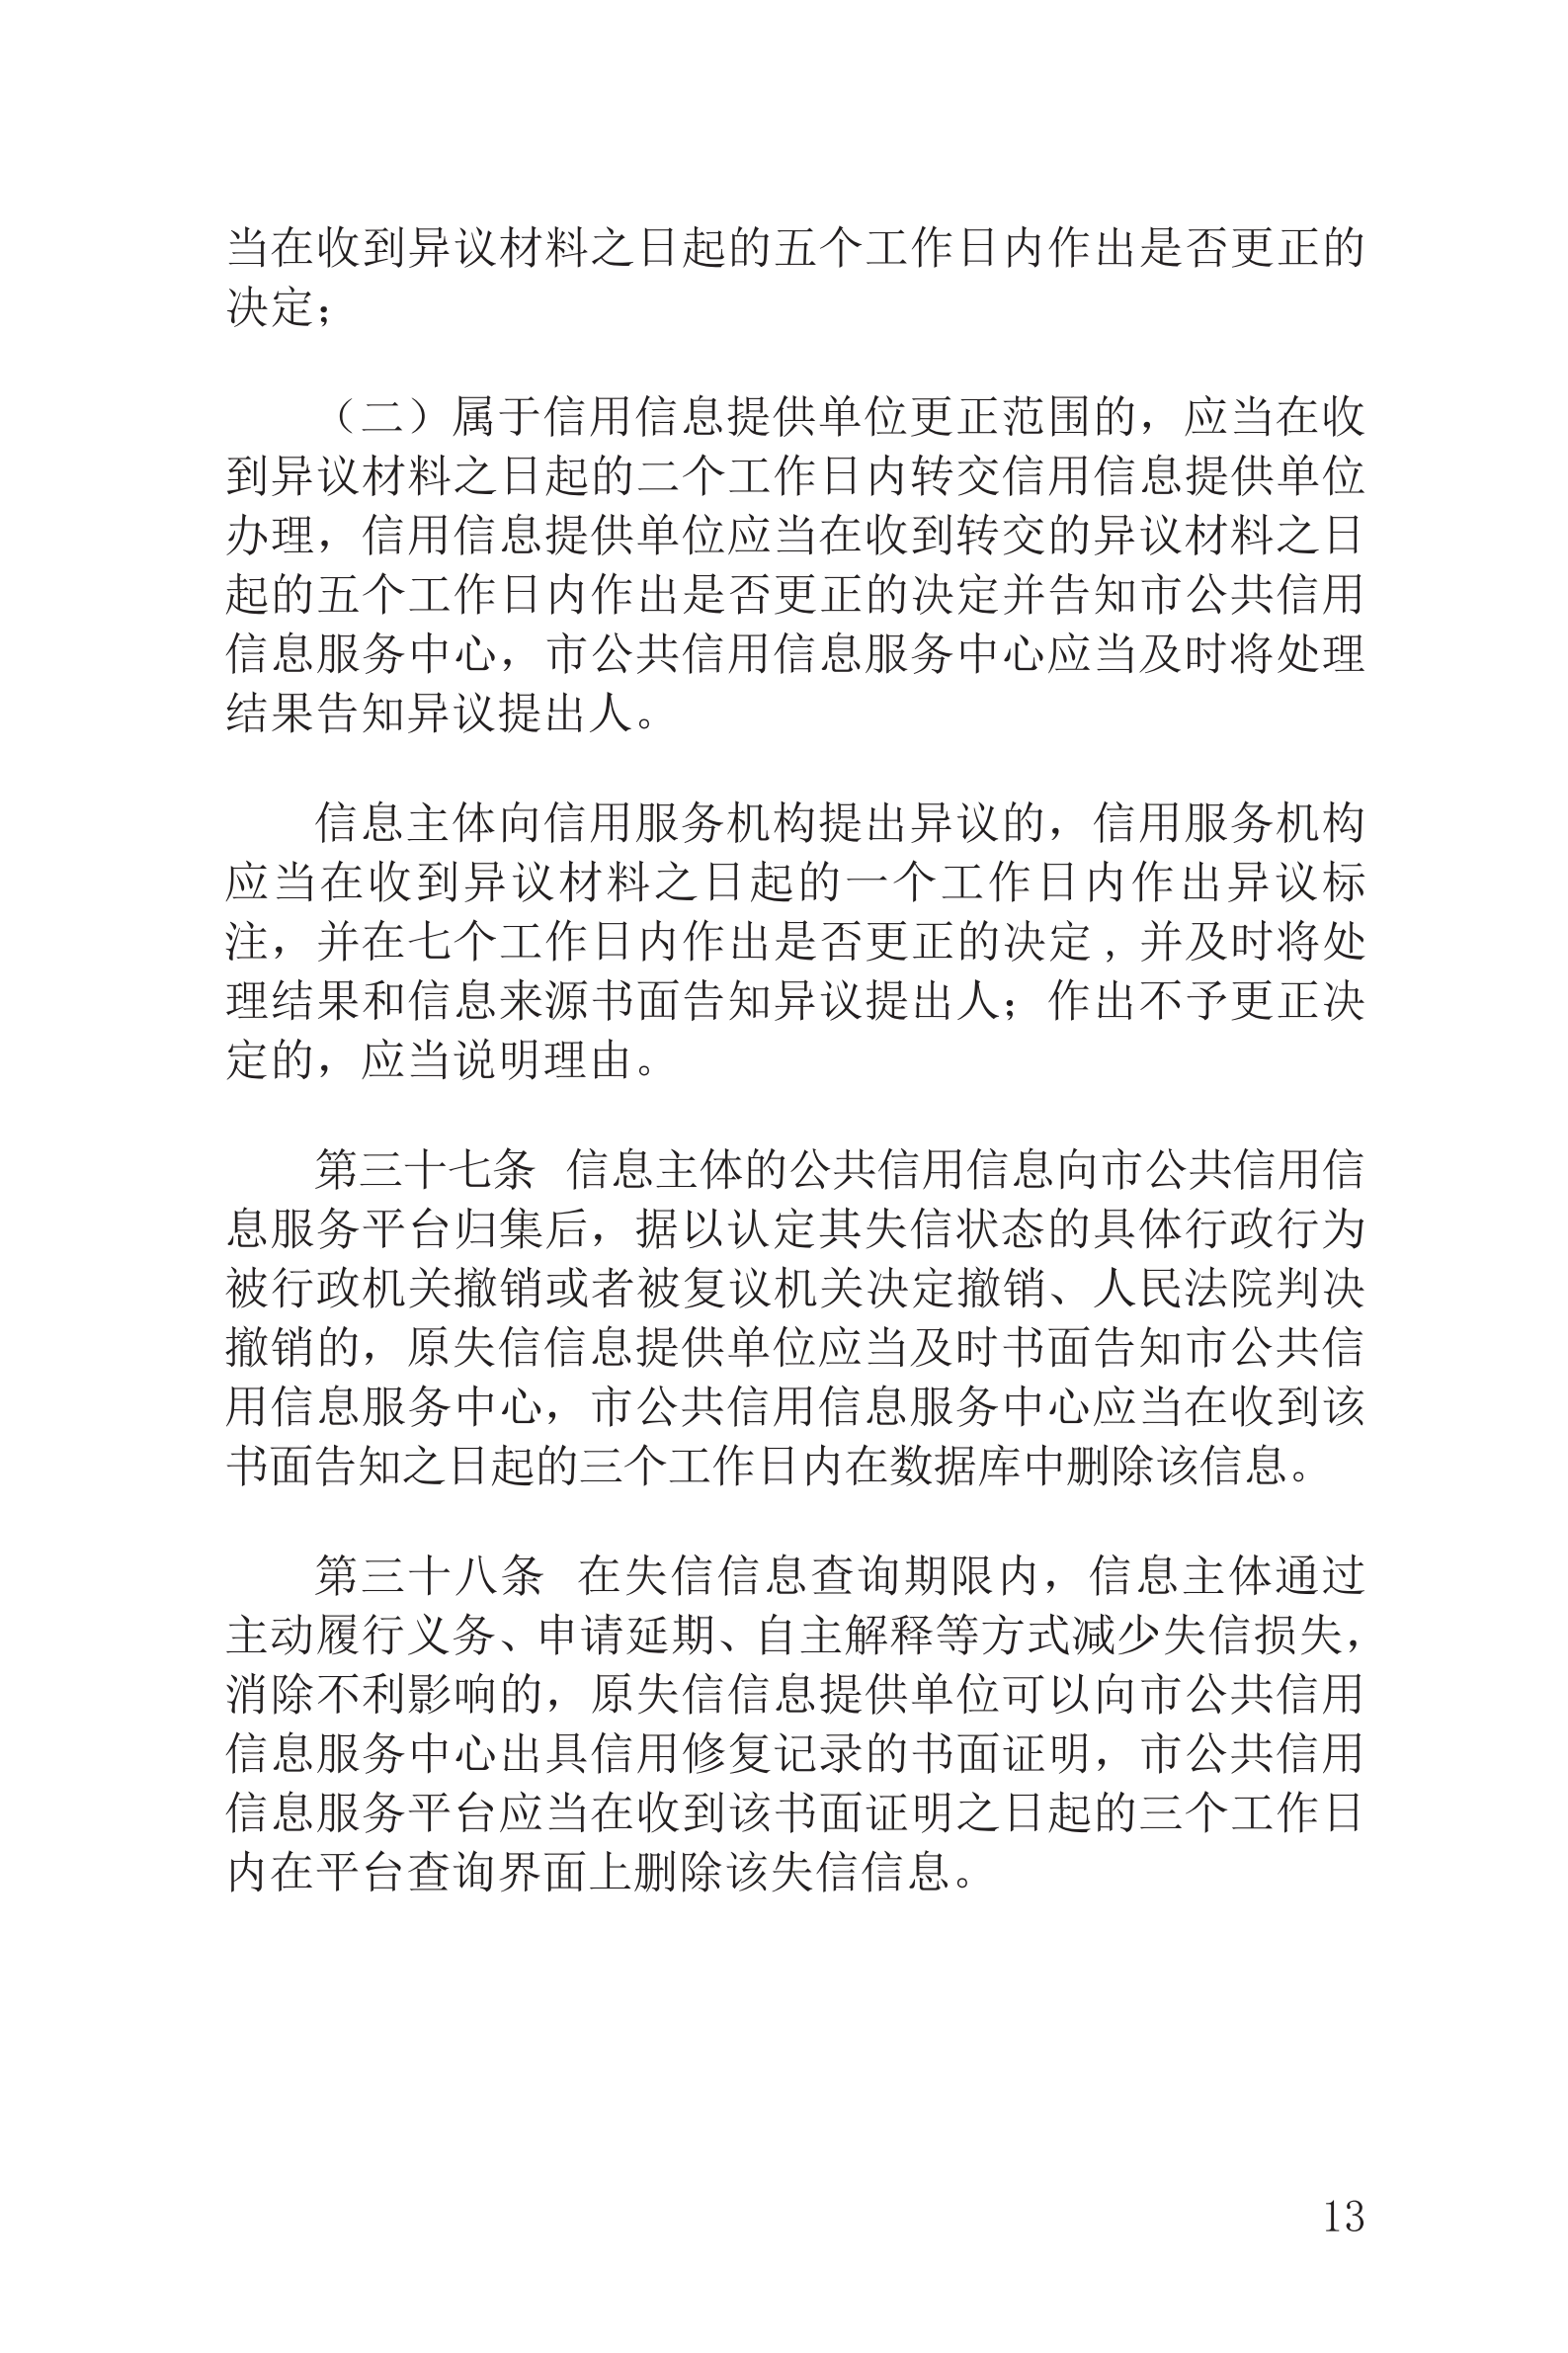 上海市社会信用条例_14.png